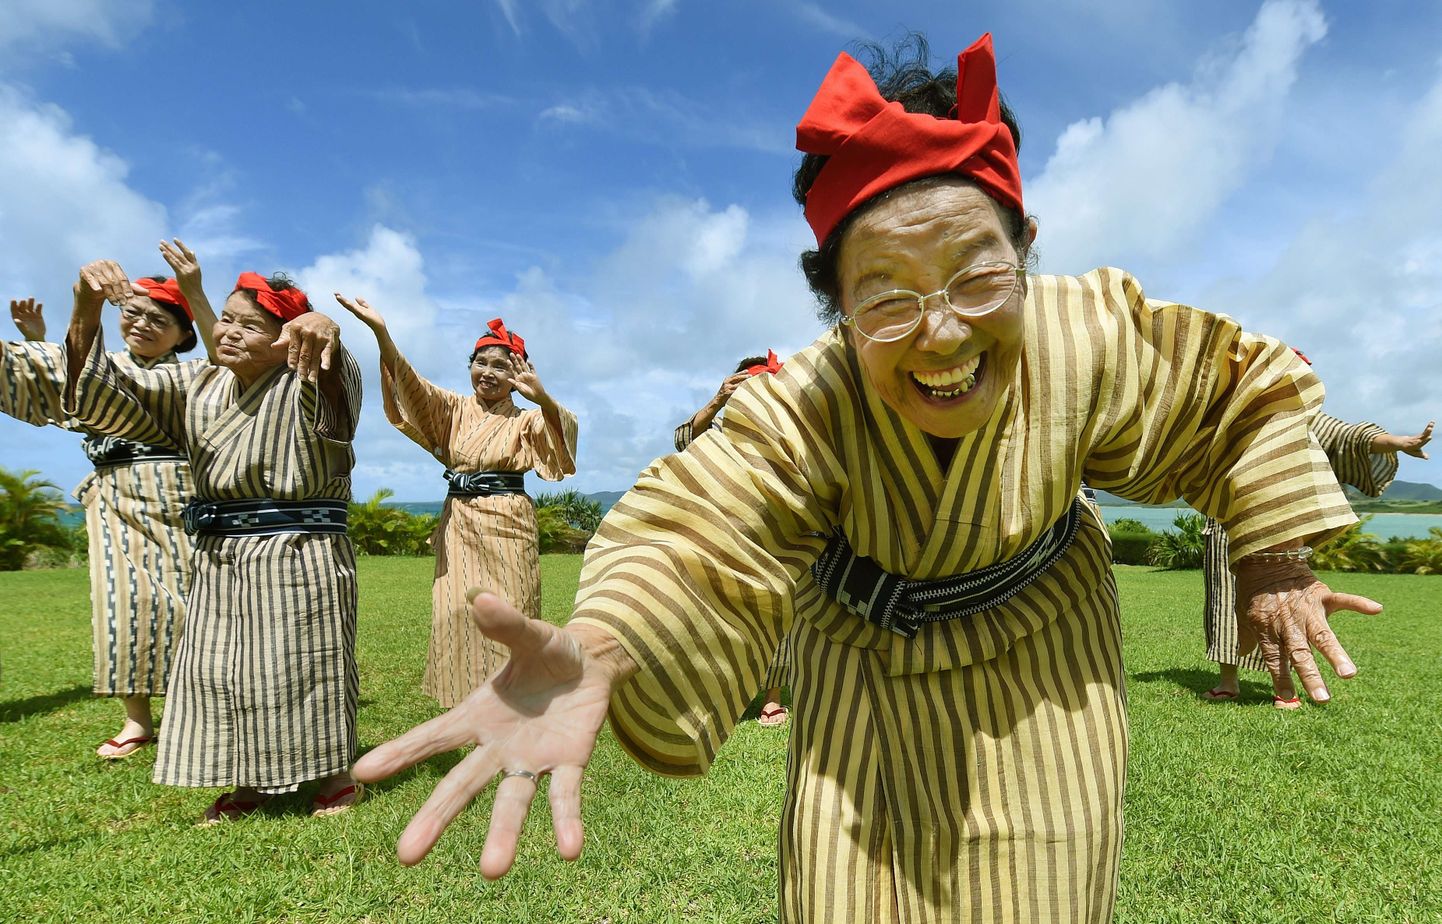 Jaapani keskmine eluiga on 83, 98 aastat ning kõige kauem elavad Okinawa saarestiku elanikud. Pildil traditsioonilistes kostüümides eakate Okinawalaste laulu- ja tantsubänd, kus naiste keskmine vanus on 84 aastat.